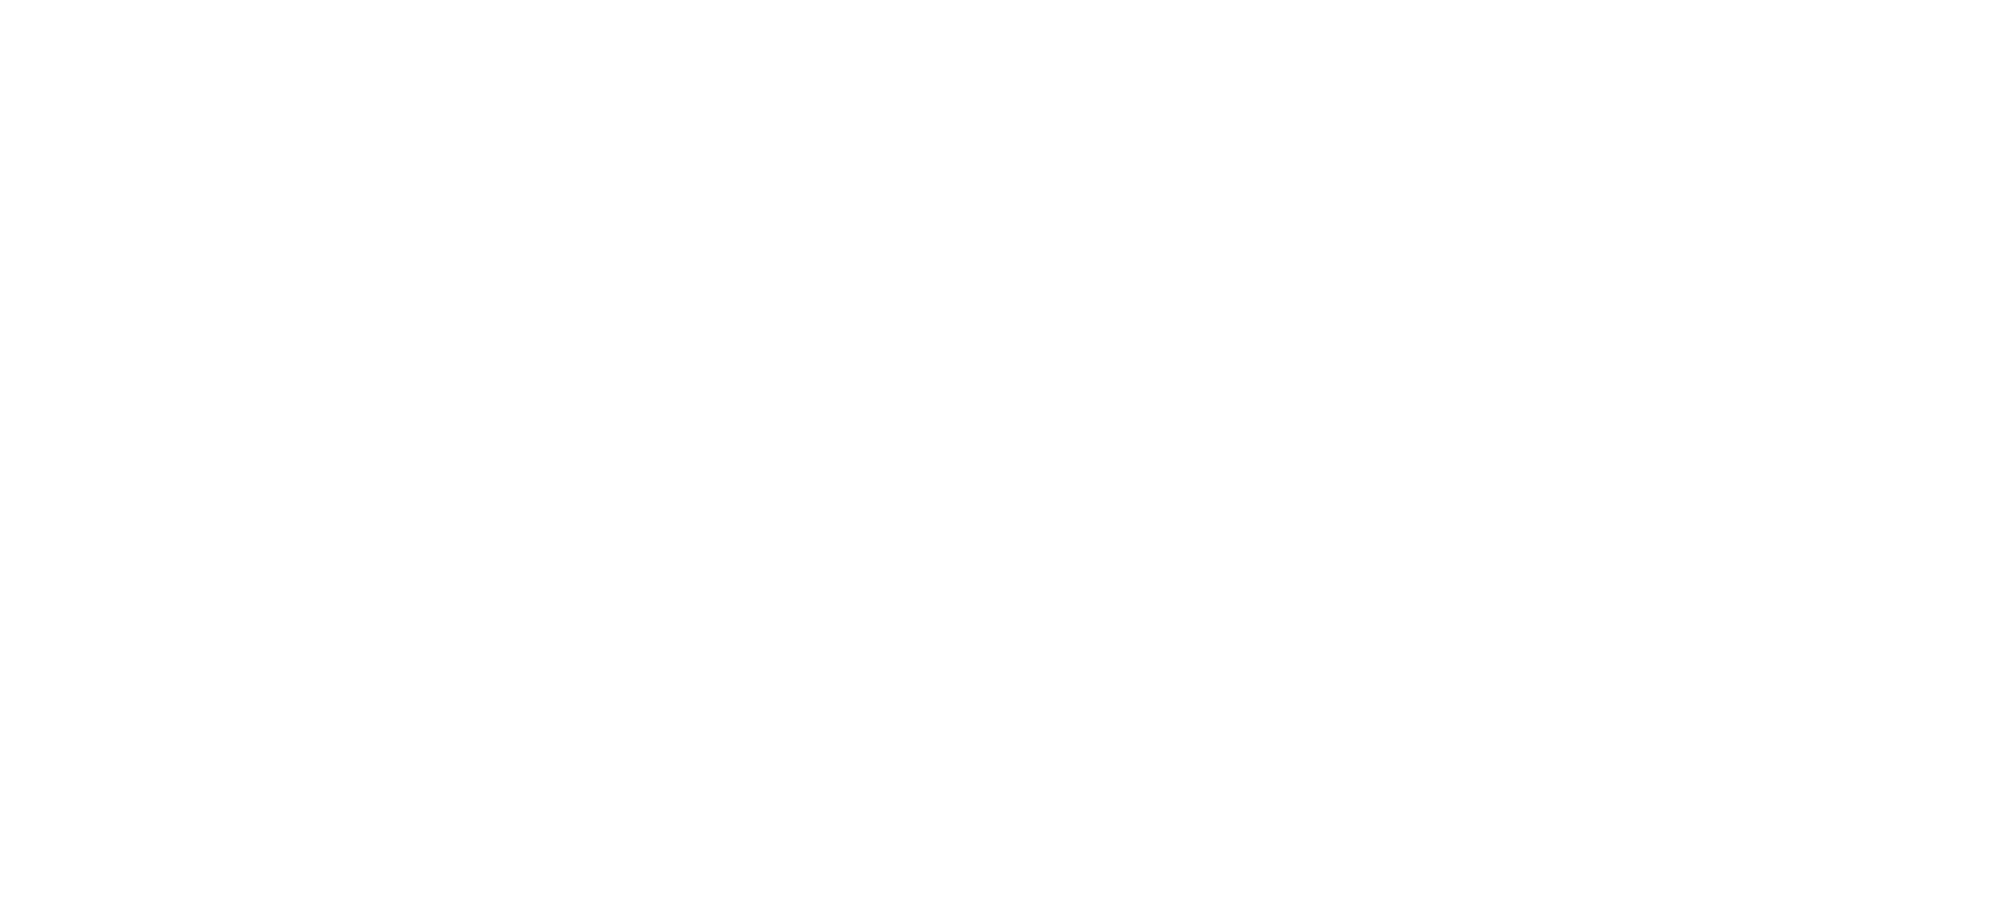  Cafe Imports 